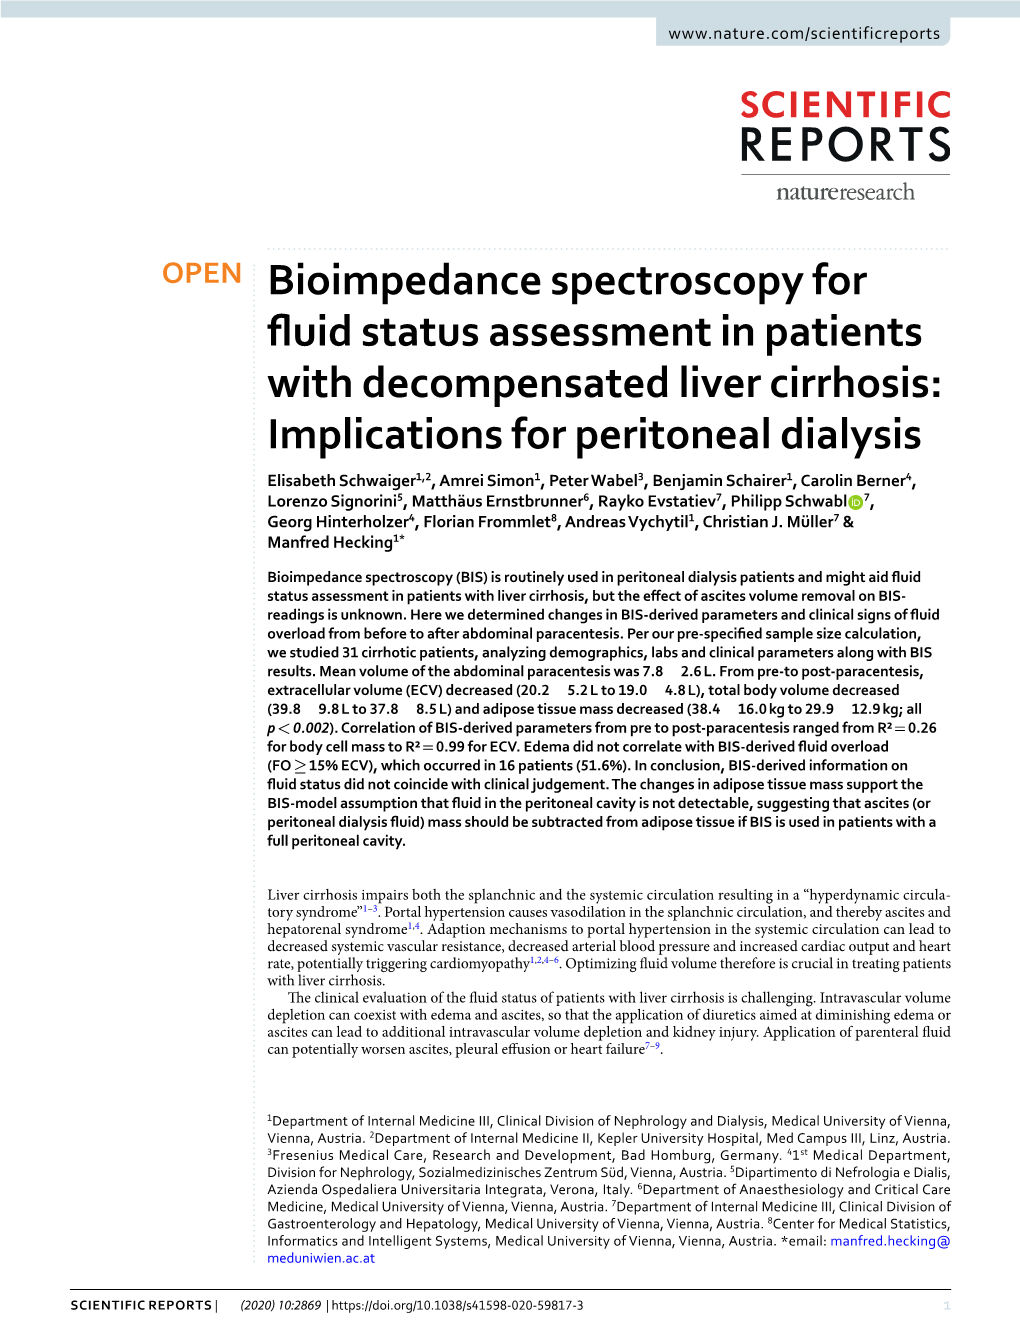 Bioimpedance Spectroscopy for Fluid Status Assessment In